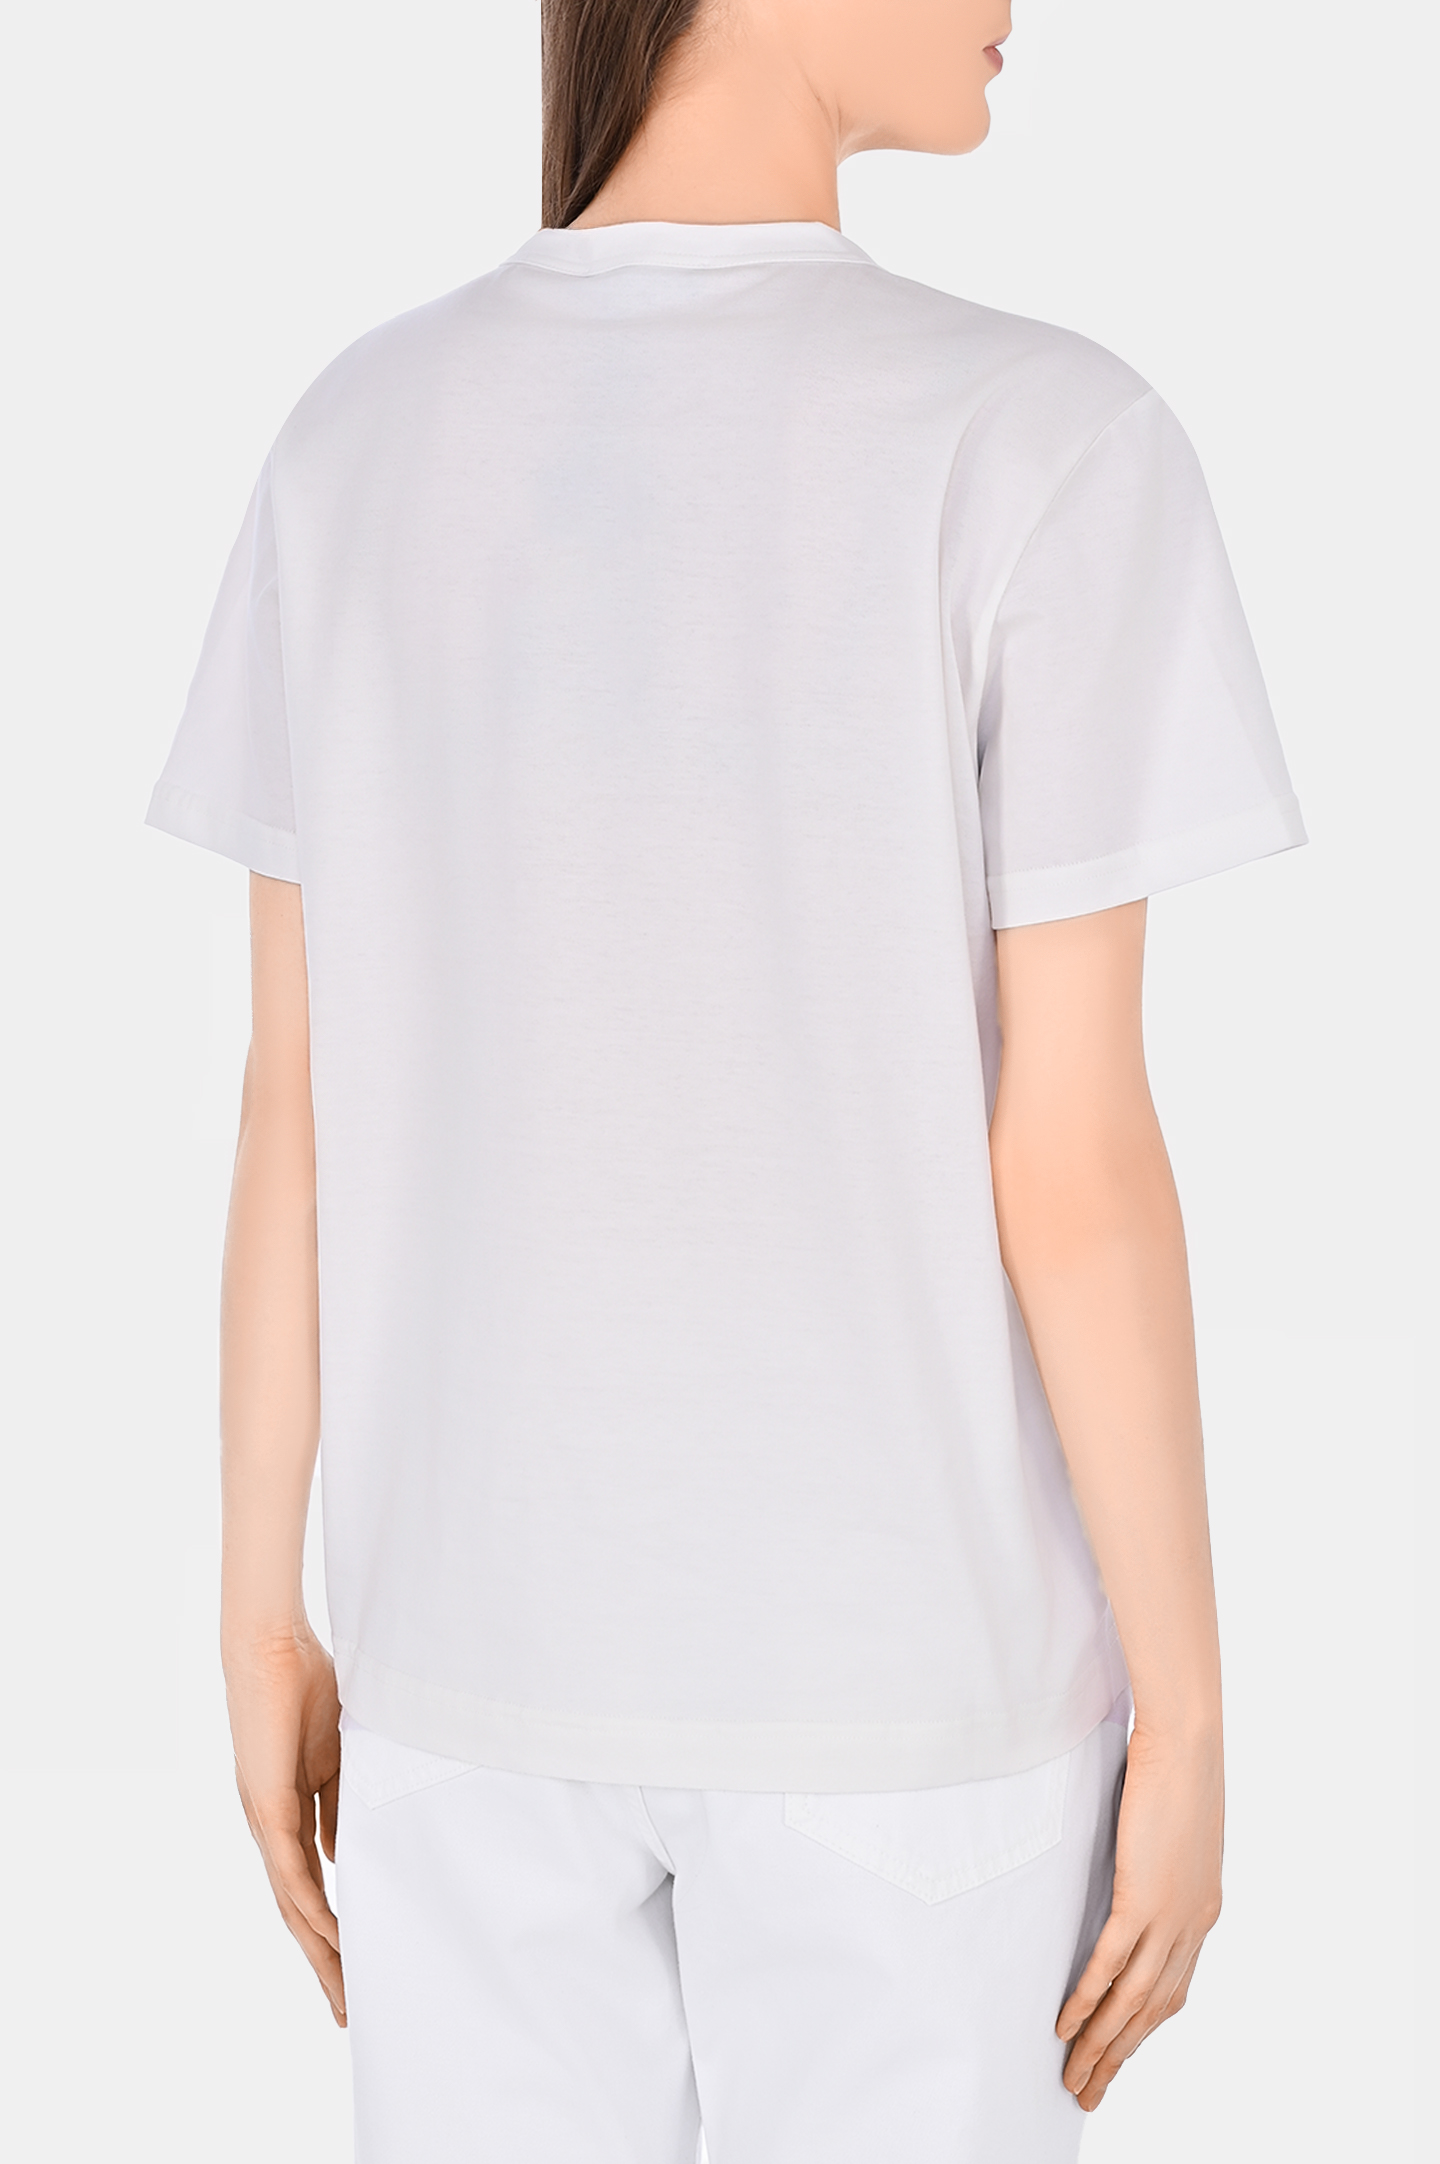 Хлопковая футболка с рисунком FABIANA FILIPPI JED274F445H445, цвет: Белый, Женский